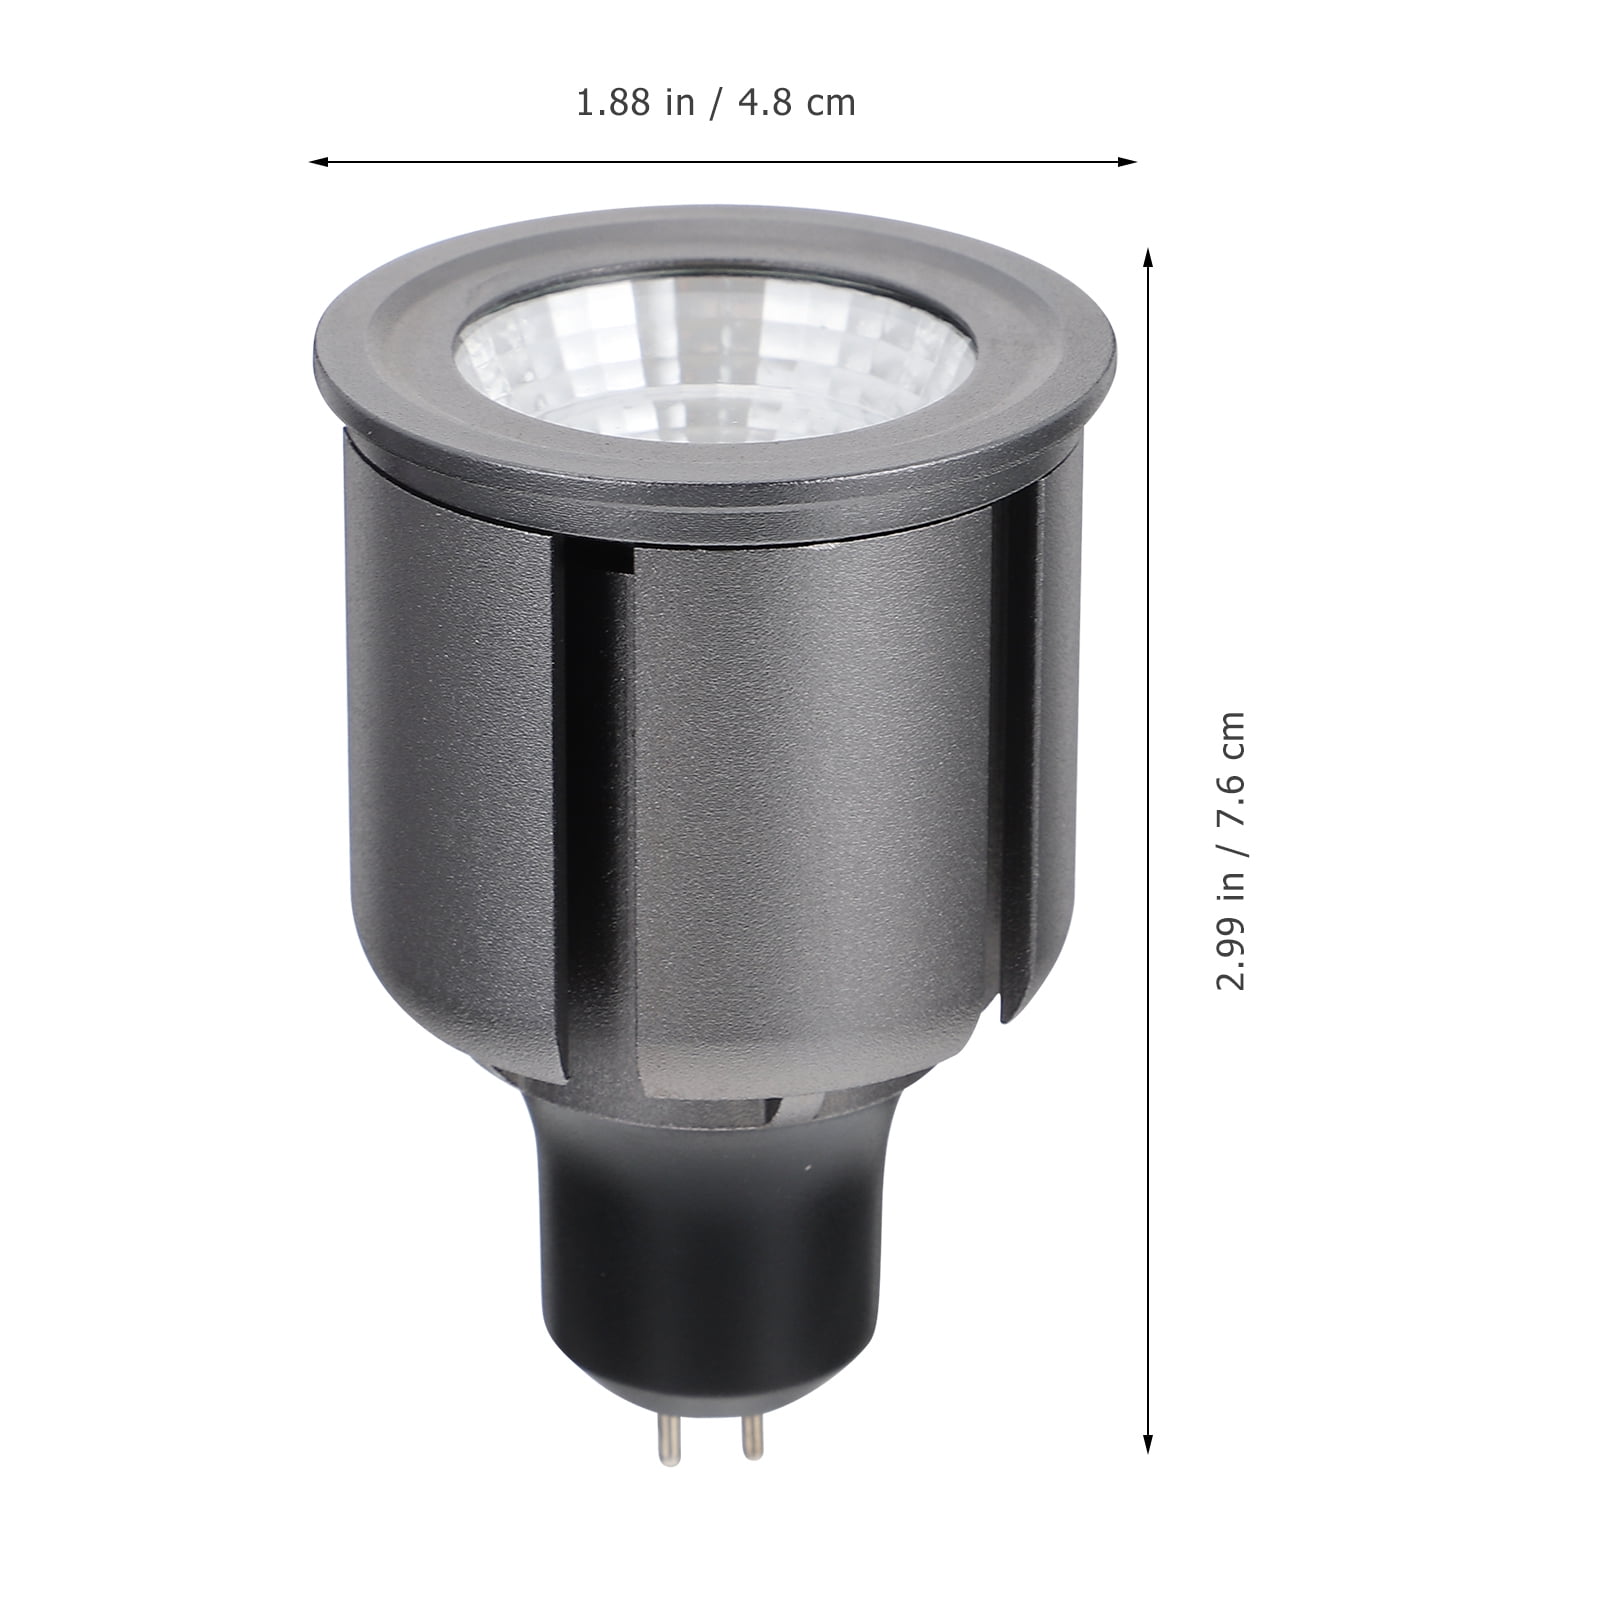 BESTONZON GU5.3 LED Light Constant Lighting Light Spotlight Cup - Walmart.com